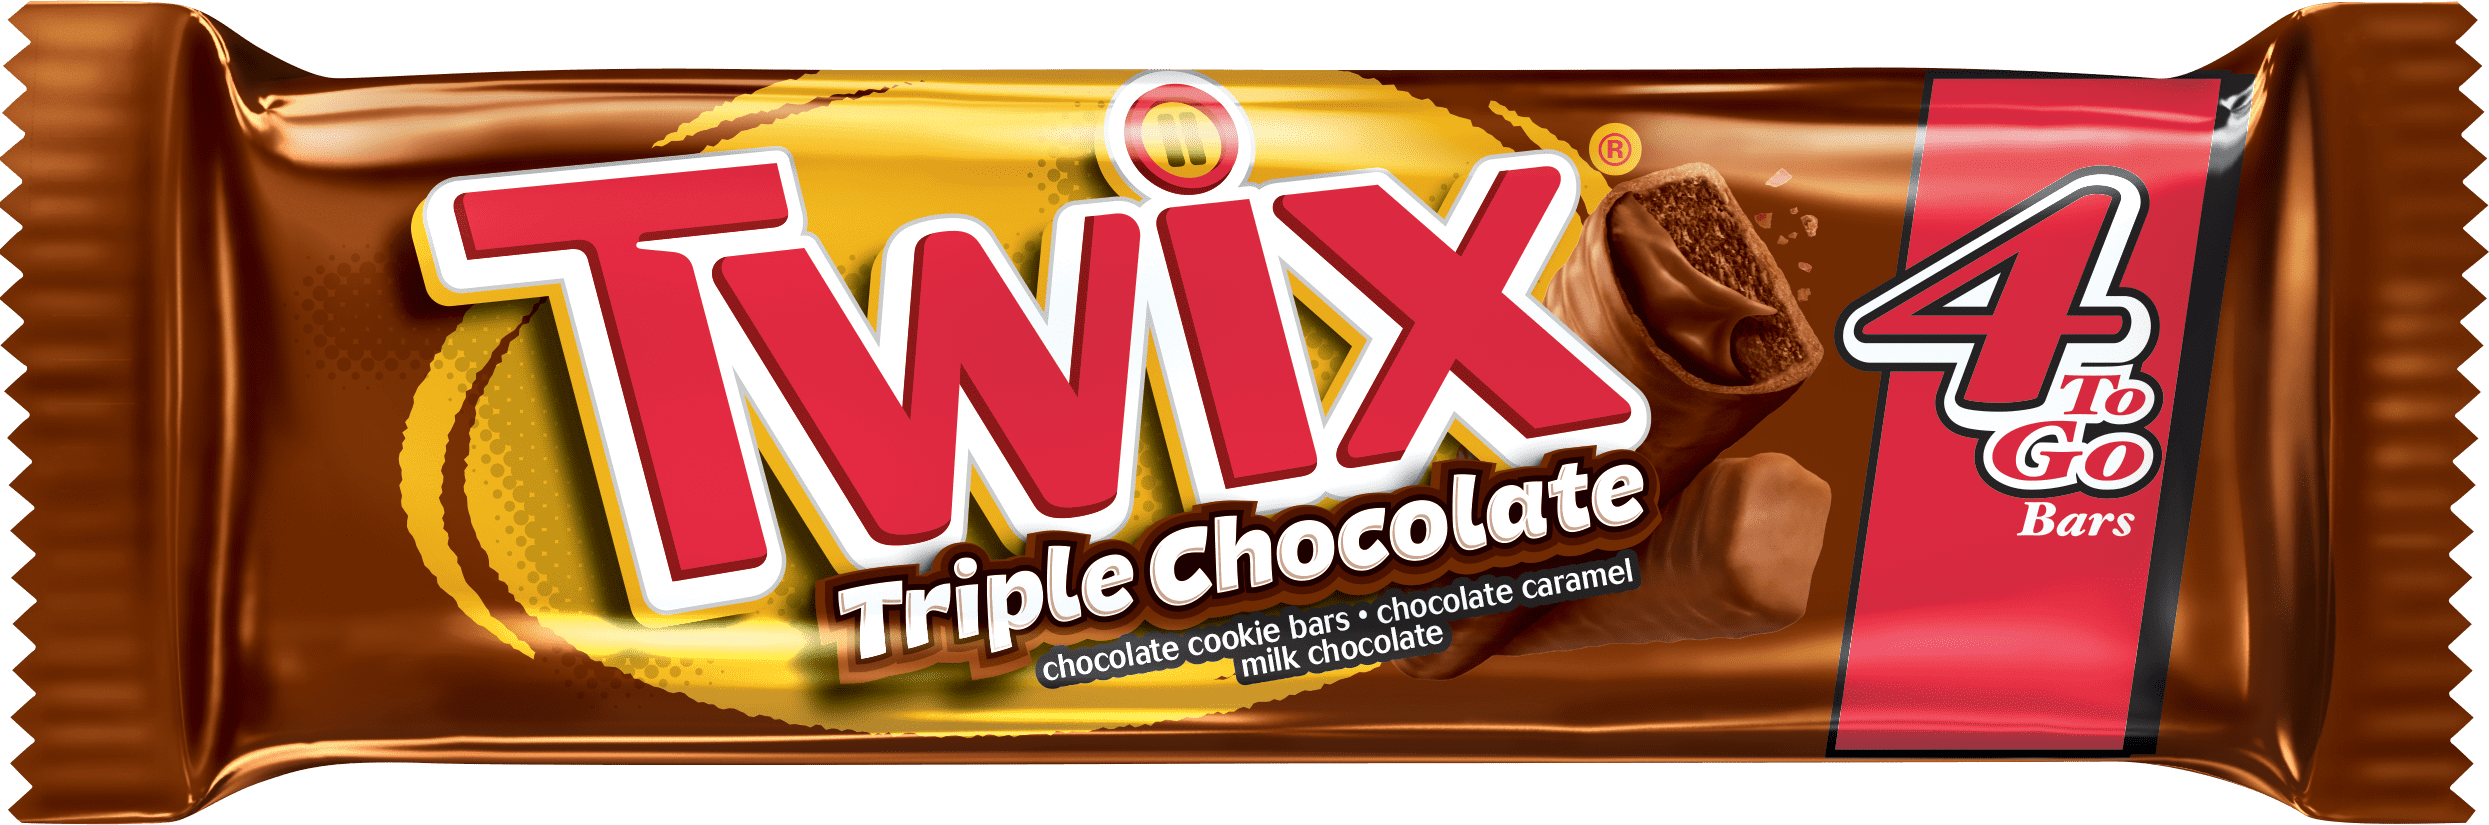 Твикс шоколад. Twix Triple Chocolate. Twix шоколадка. Твикс без фона шоколадки.